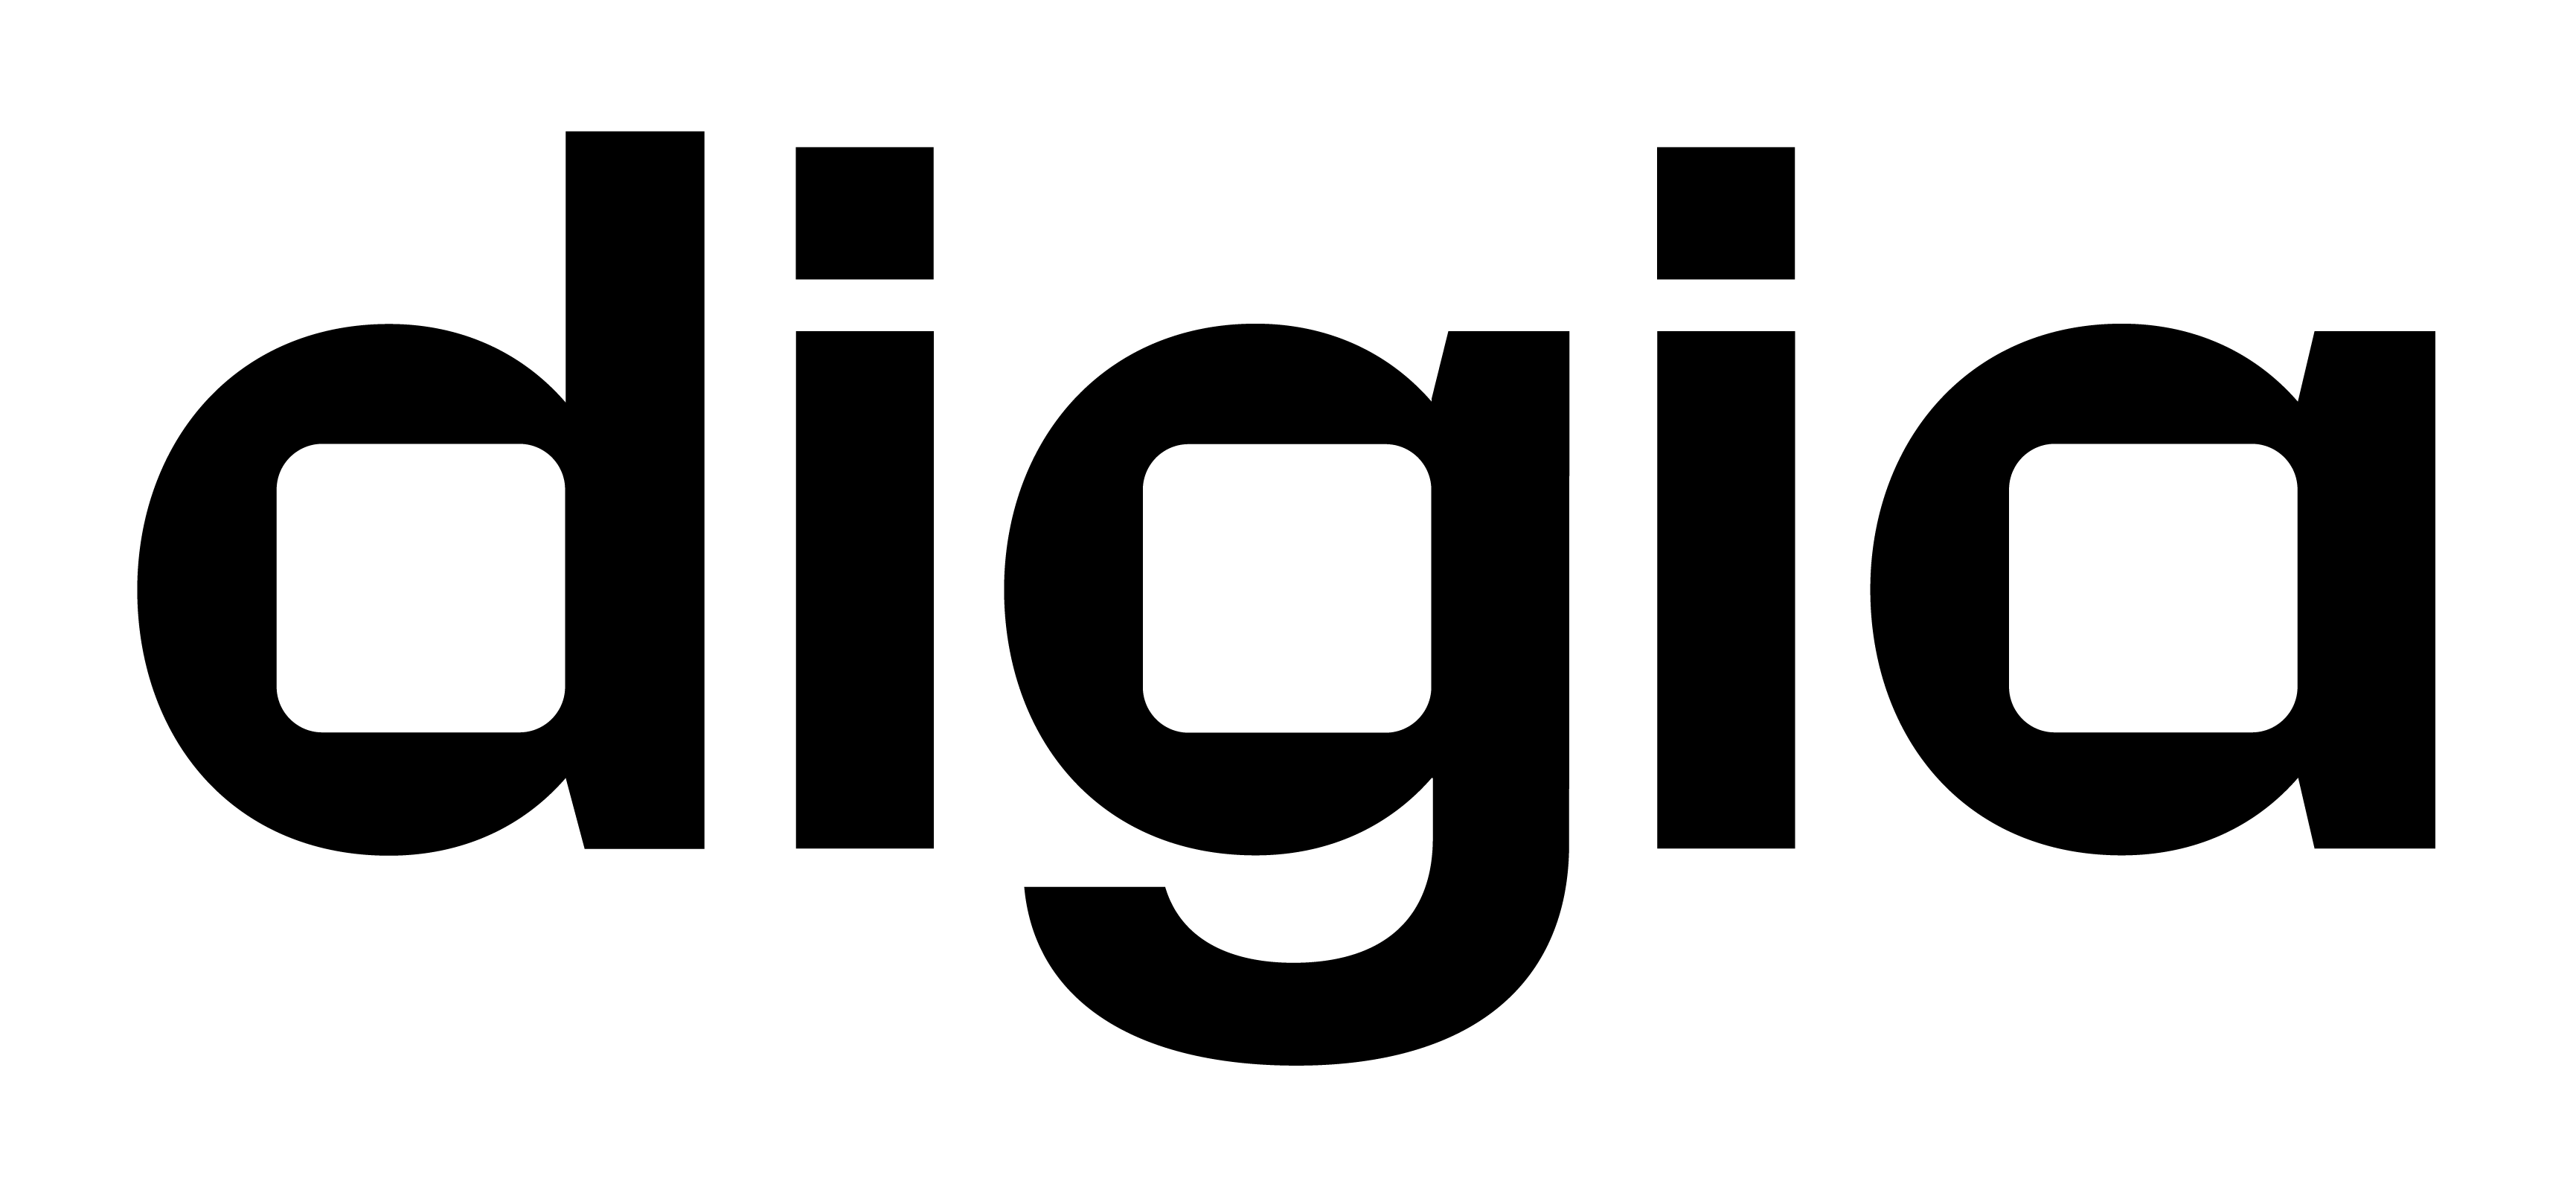 digian logo, joka on samalla linkki